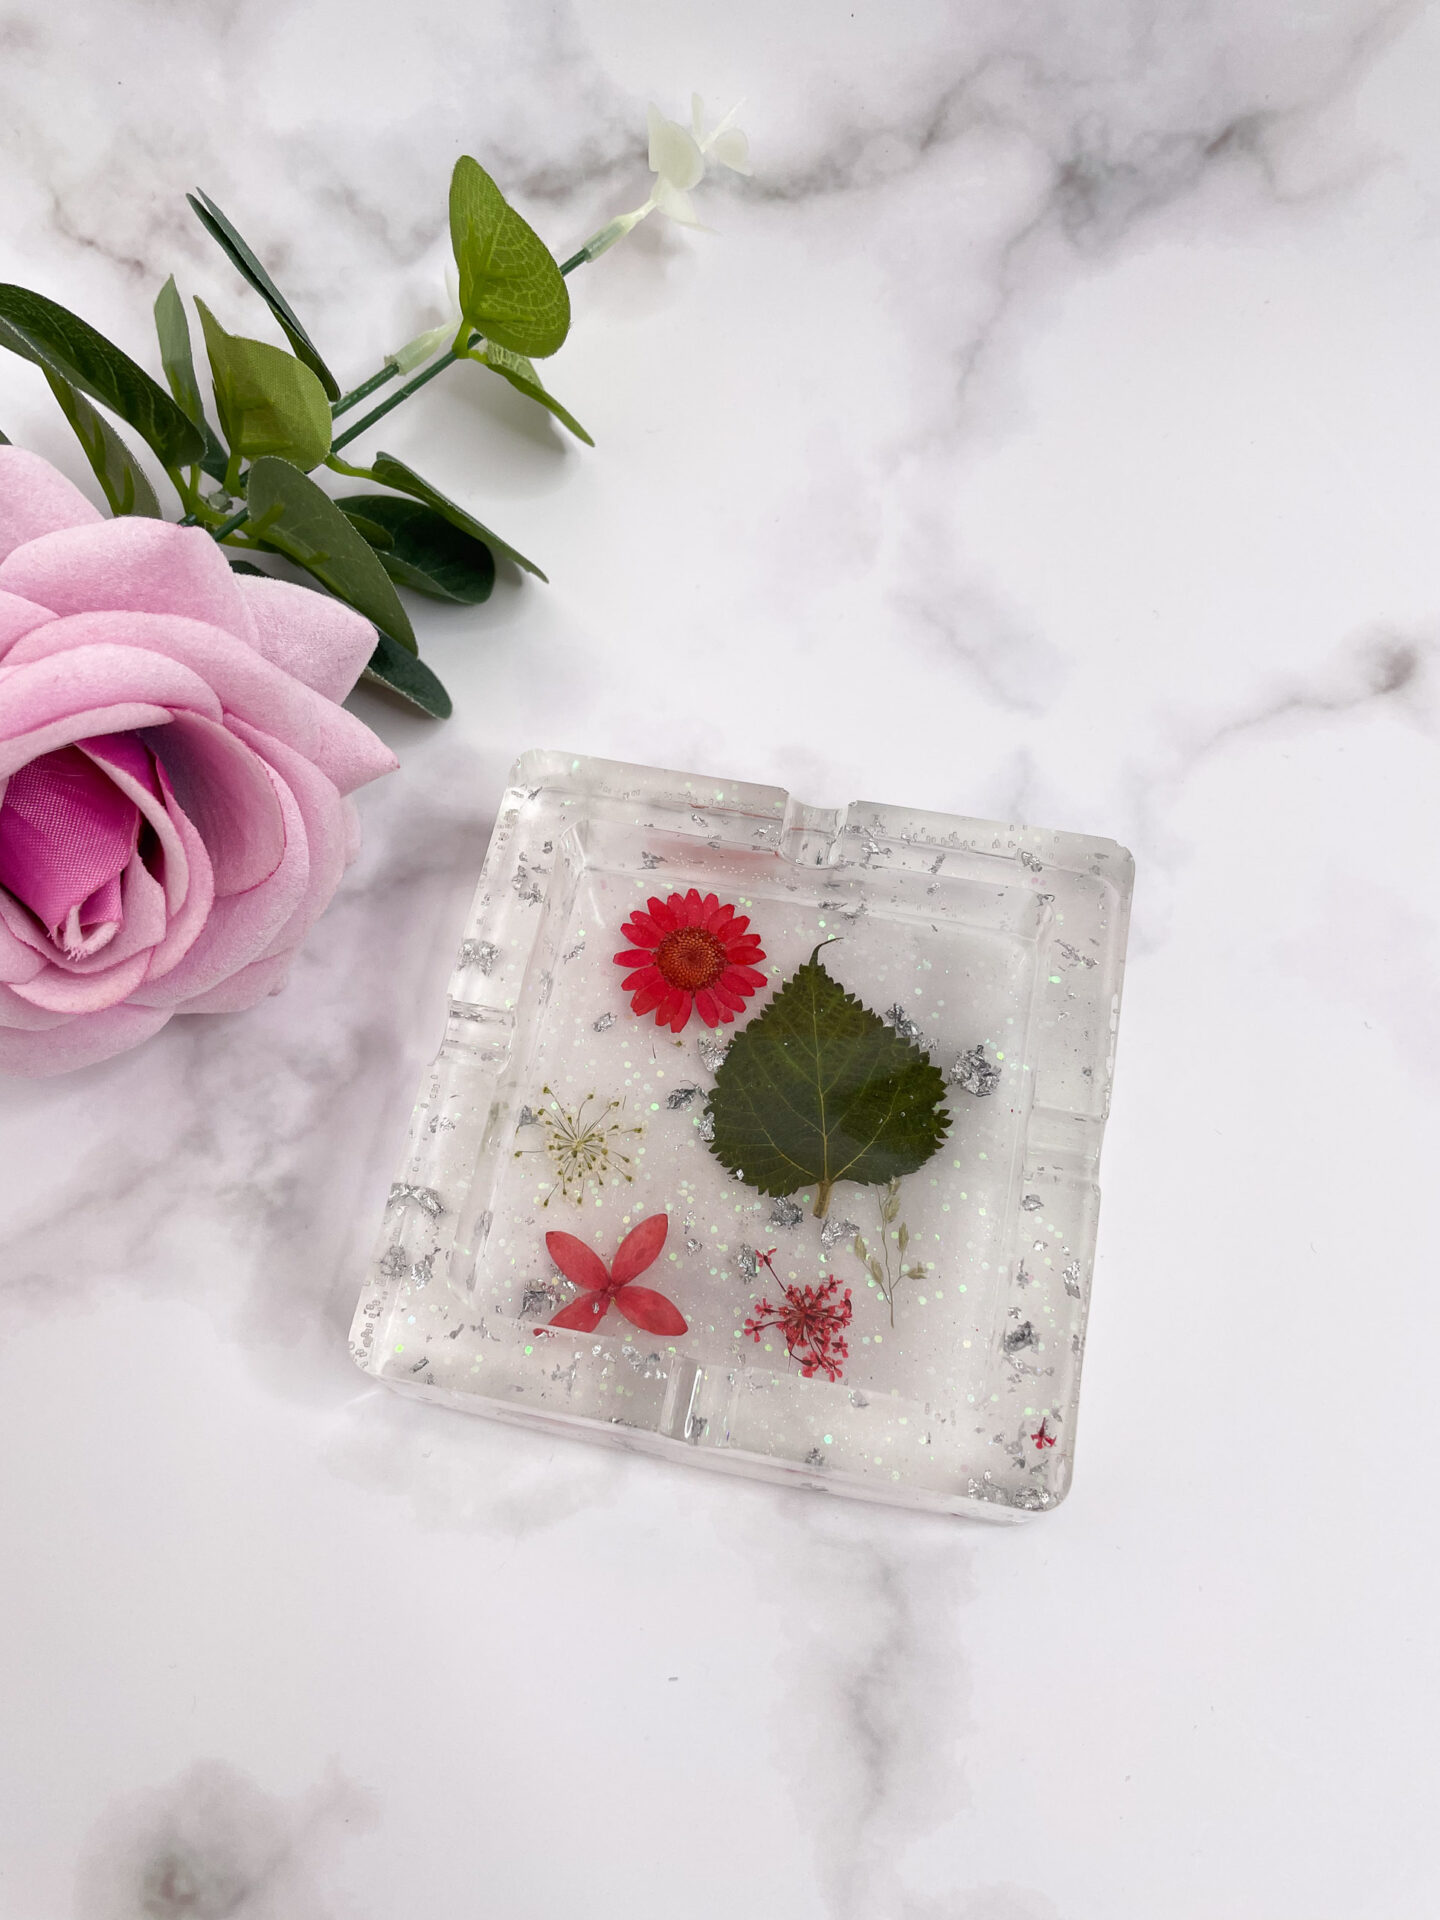 Cendrier carré en résine – Transparent fleurs et feuille argent avec fond paillette - boutique idées cadeaux - boutique en ligne - création française et artisanale.